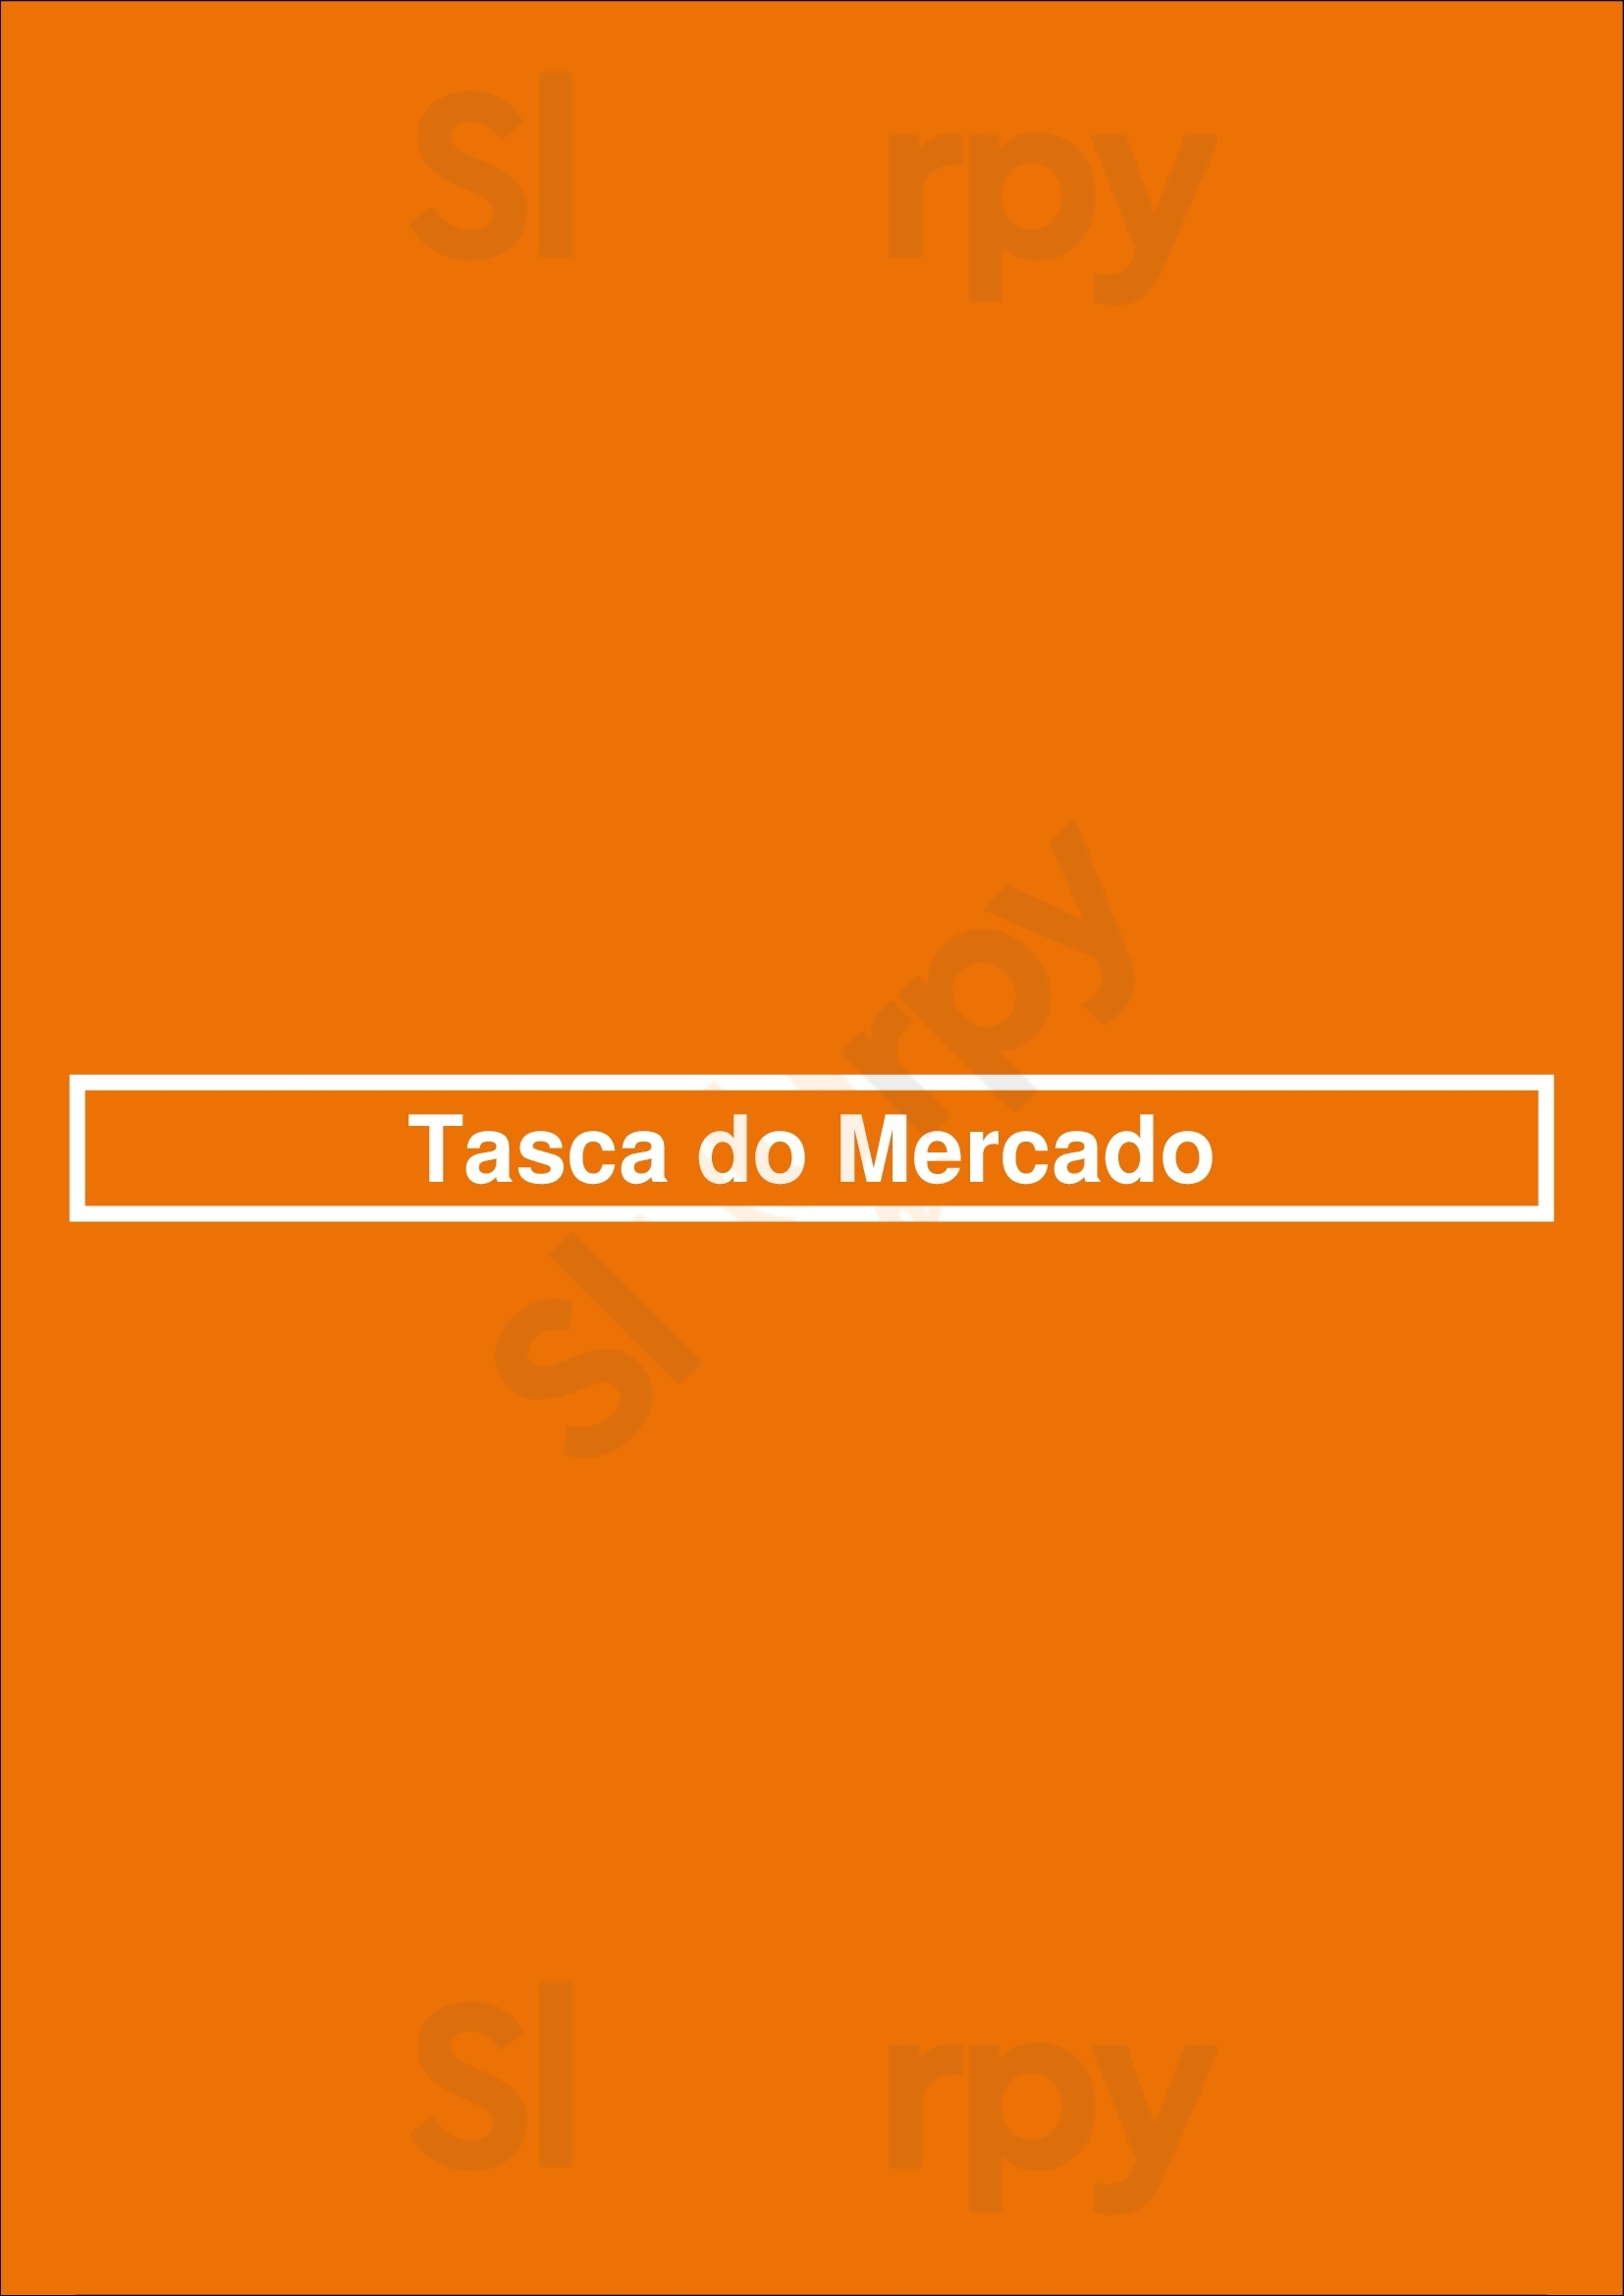 Tasca Do Mercado Lisboa Menu - 1